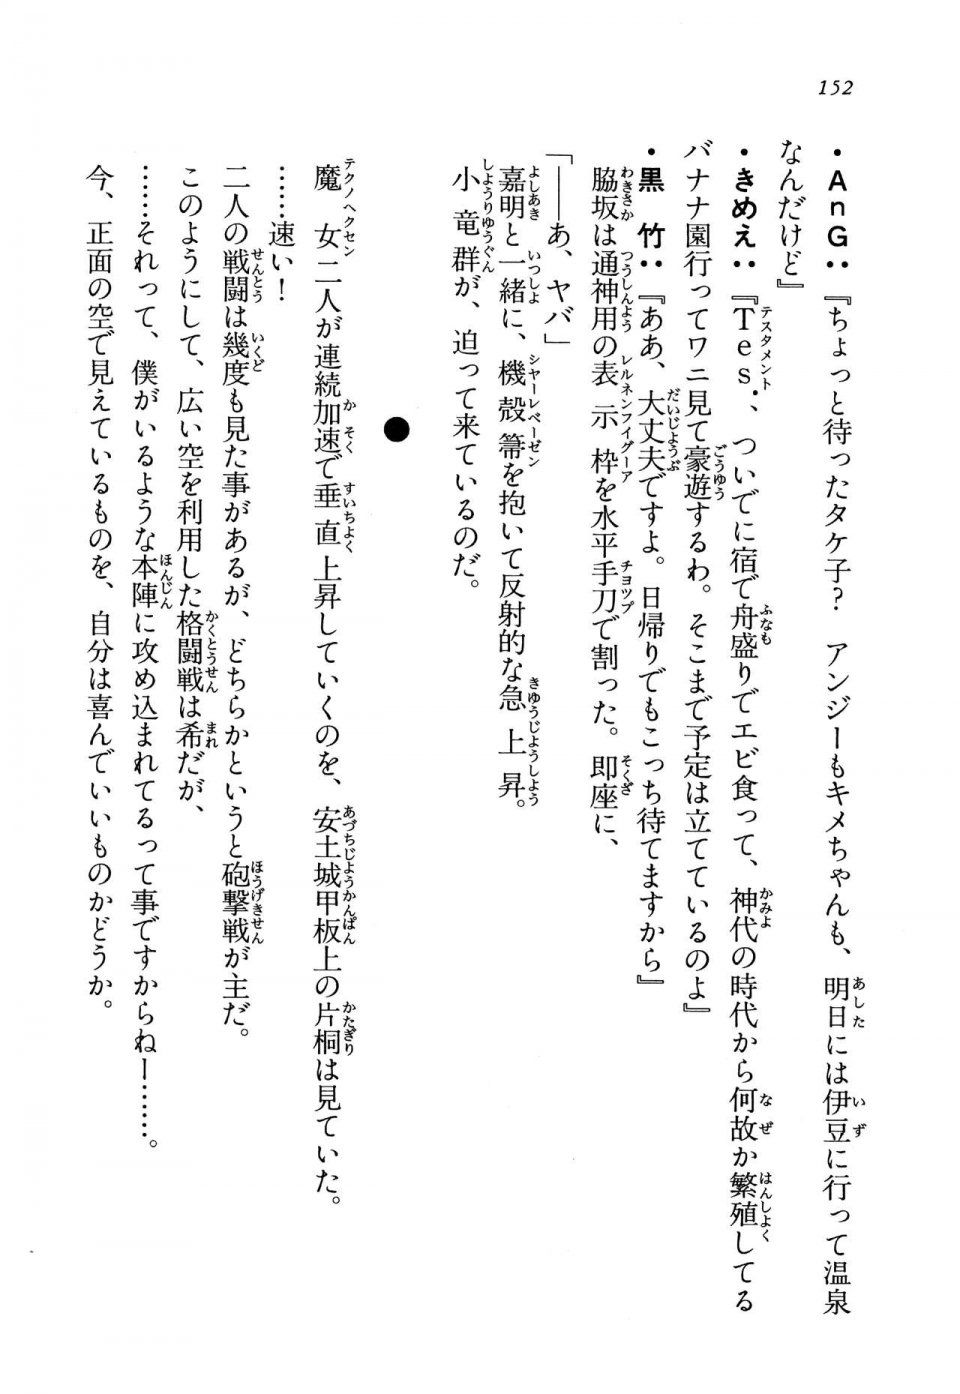 Kyoukai Senjou no Horizon LN Vol 13(6A) - Photo #152